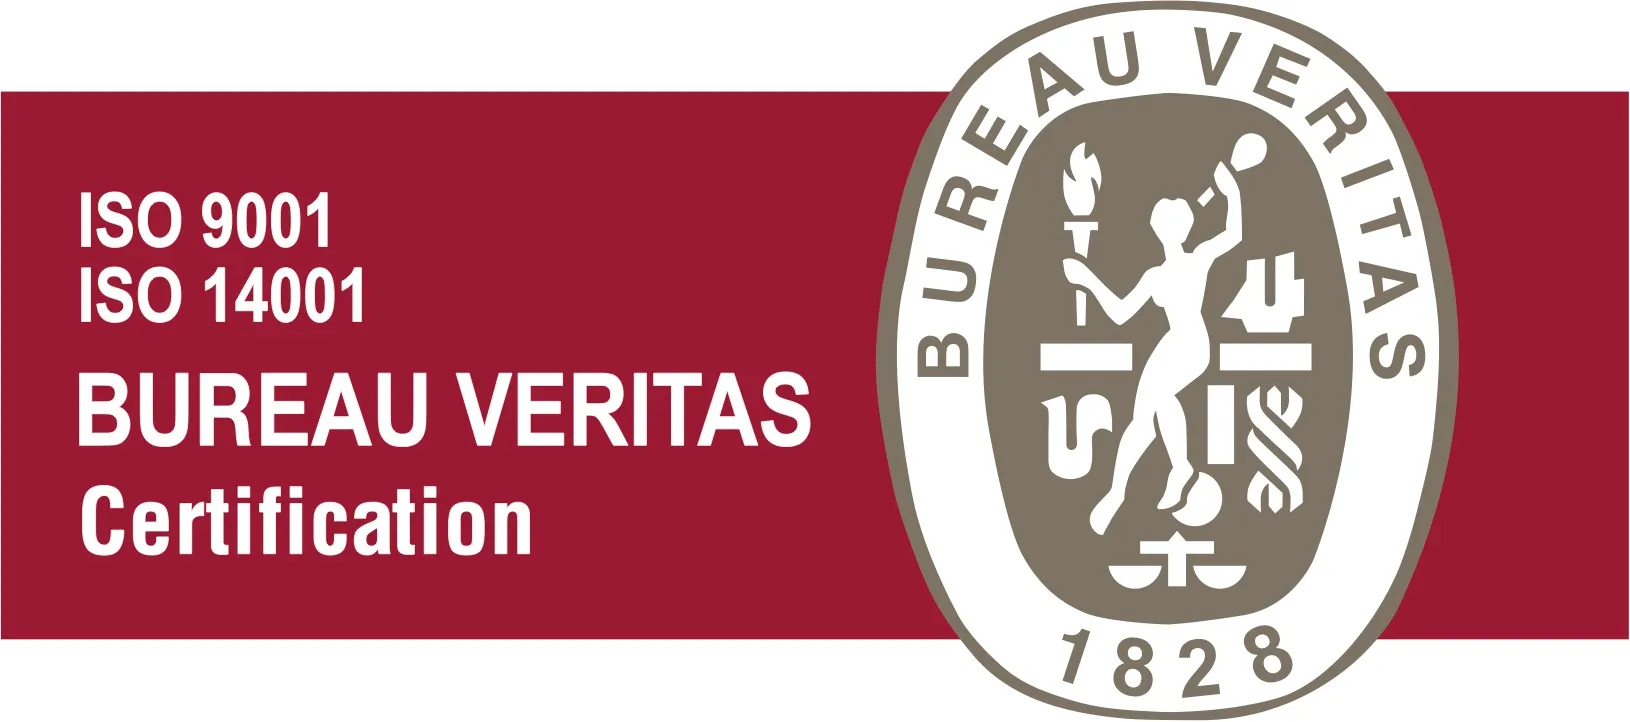 Logo de Bureau Veritas con las certificaciones ISO 9001 y 14001